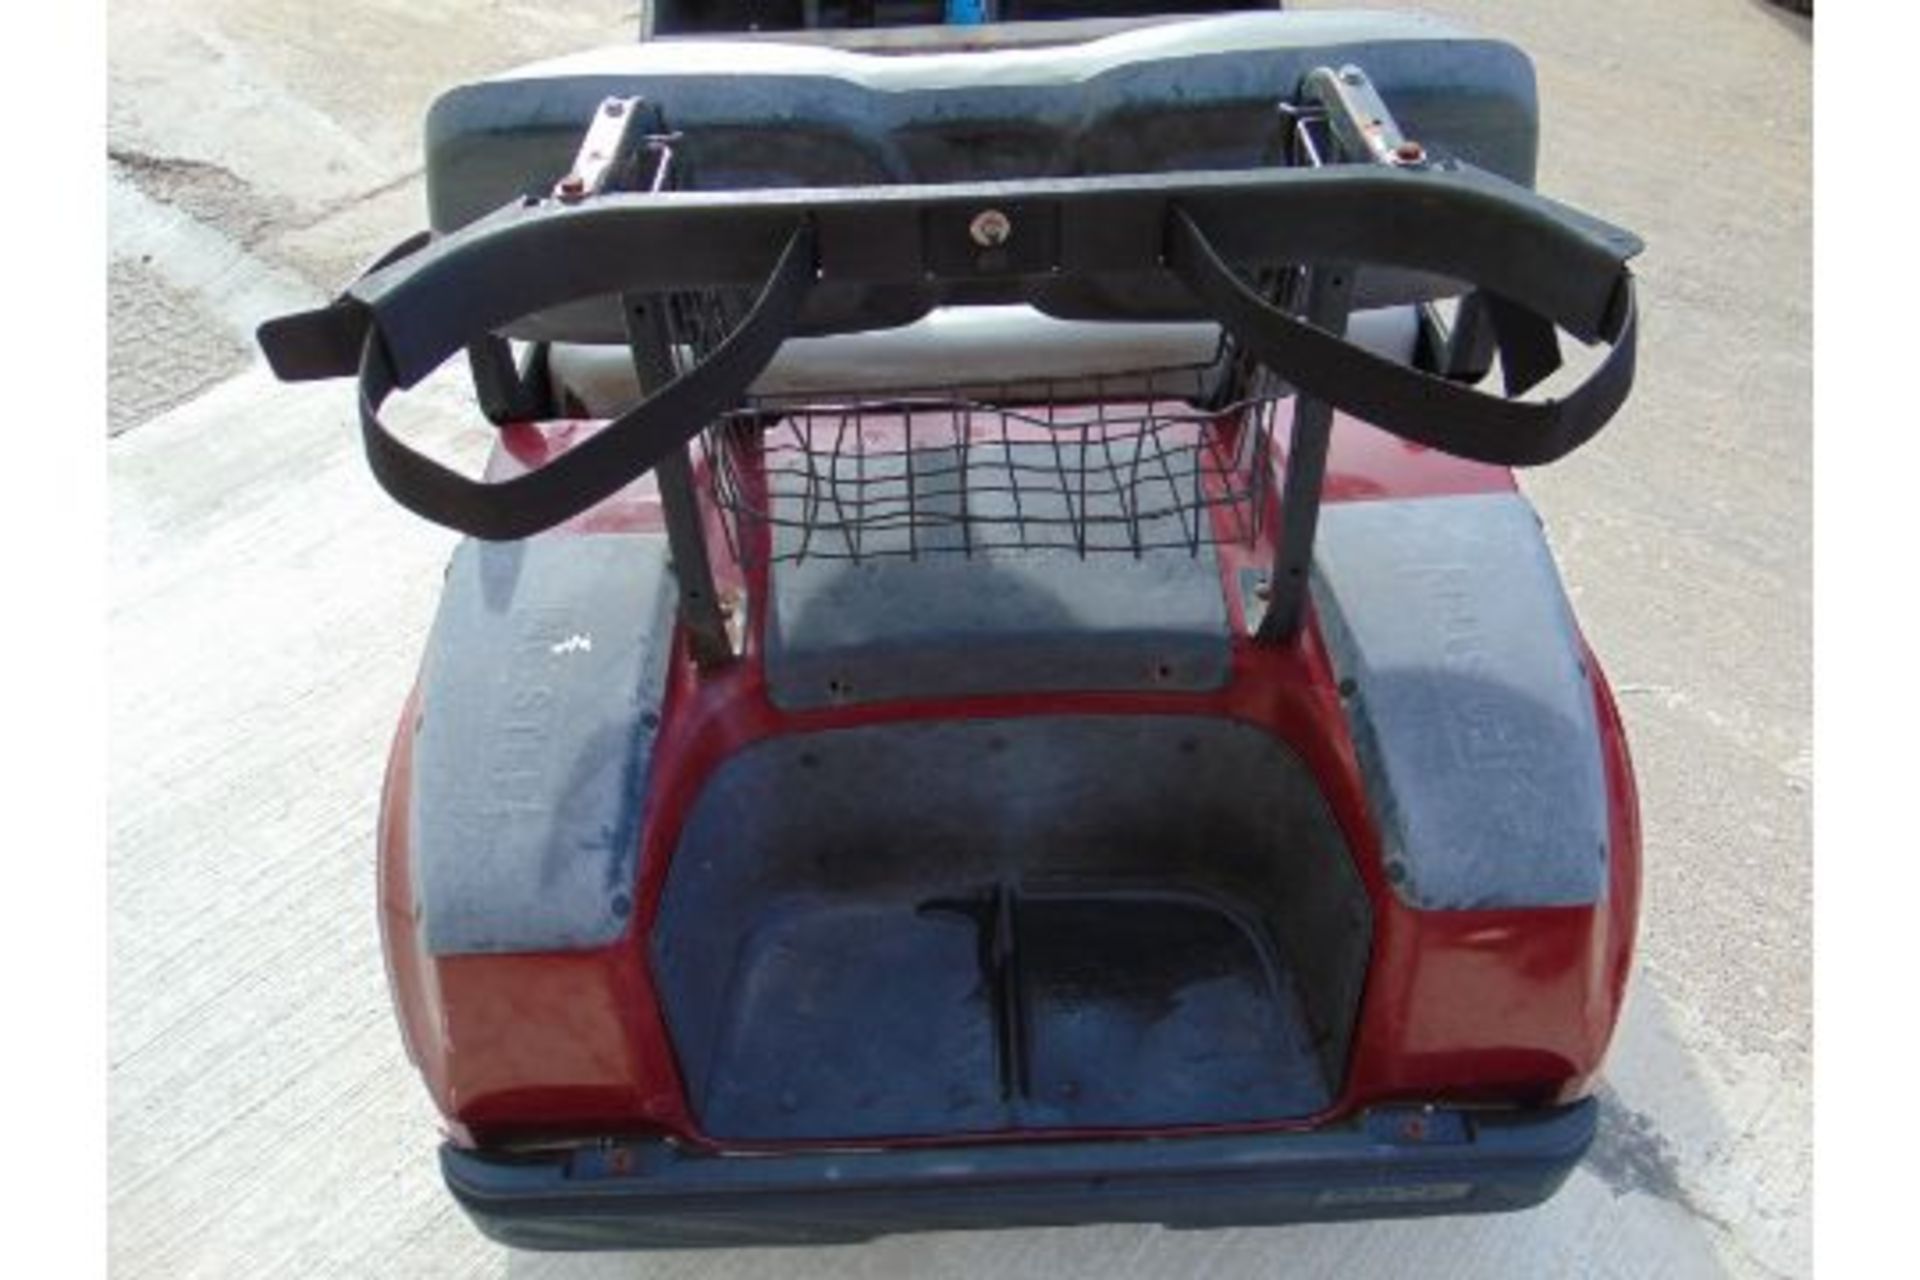 Club Car Golf Cart - Petrol Engine - Image 17 of 17